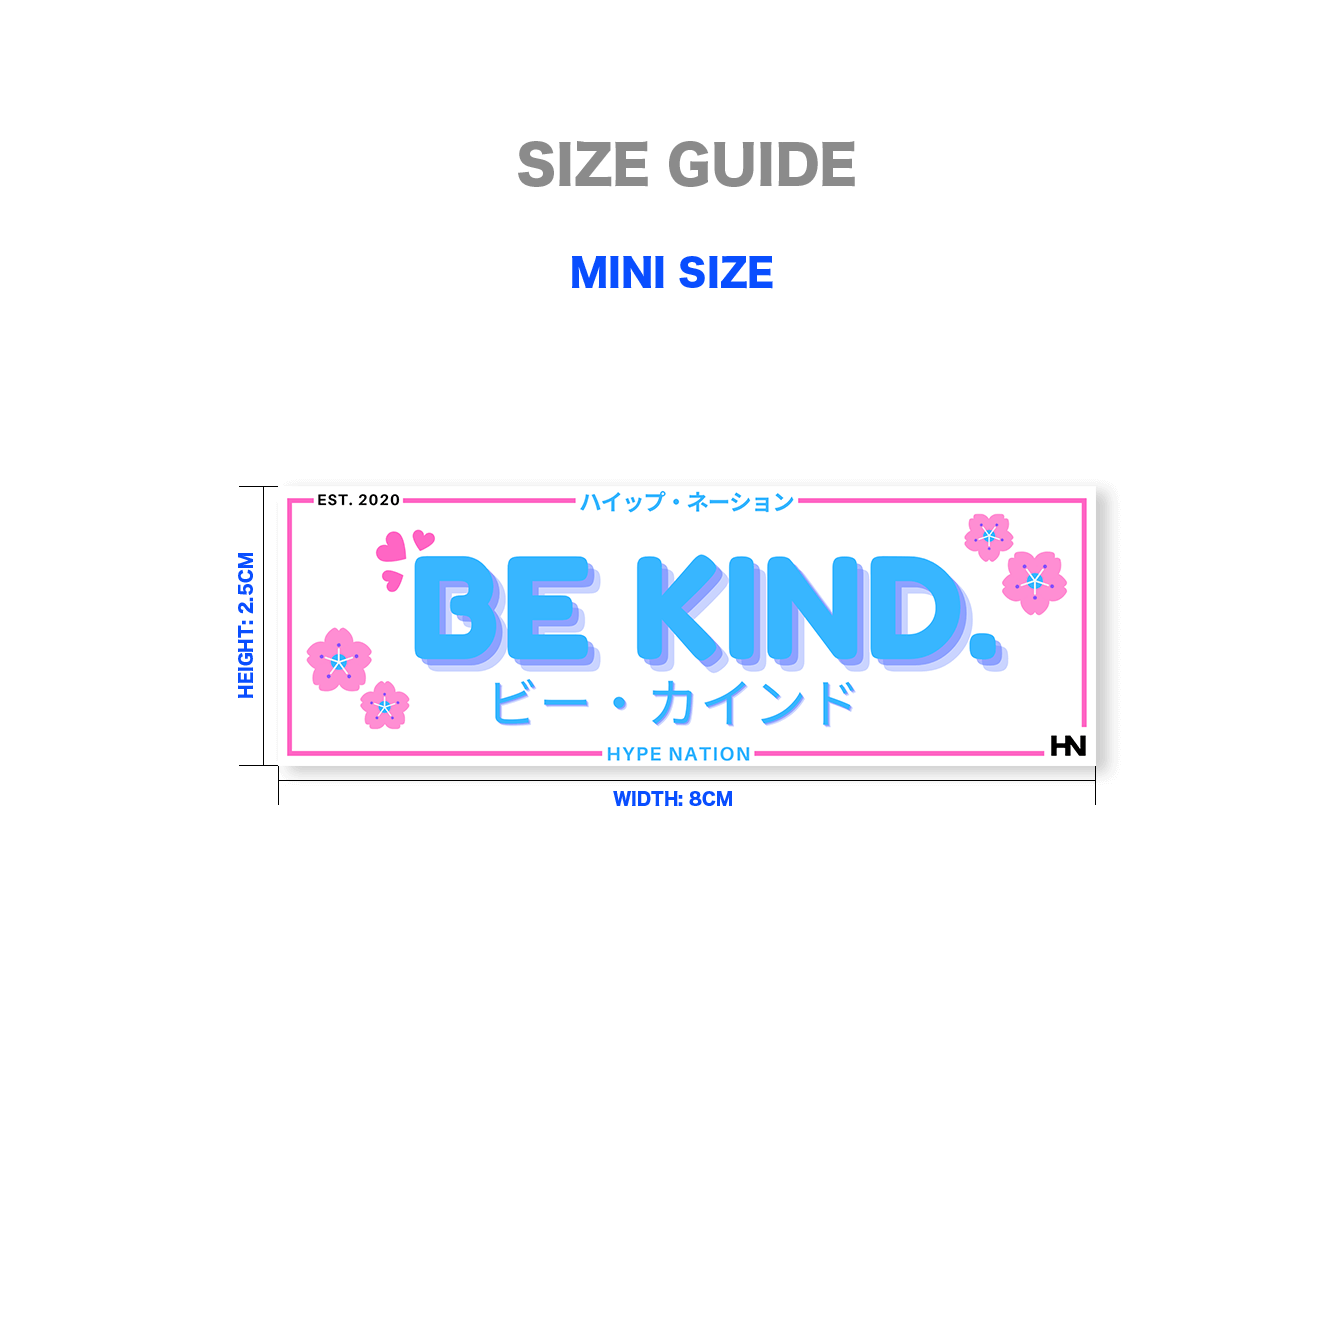 Be Kind - Slap Sticker - Hype Nation